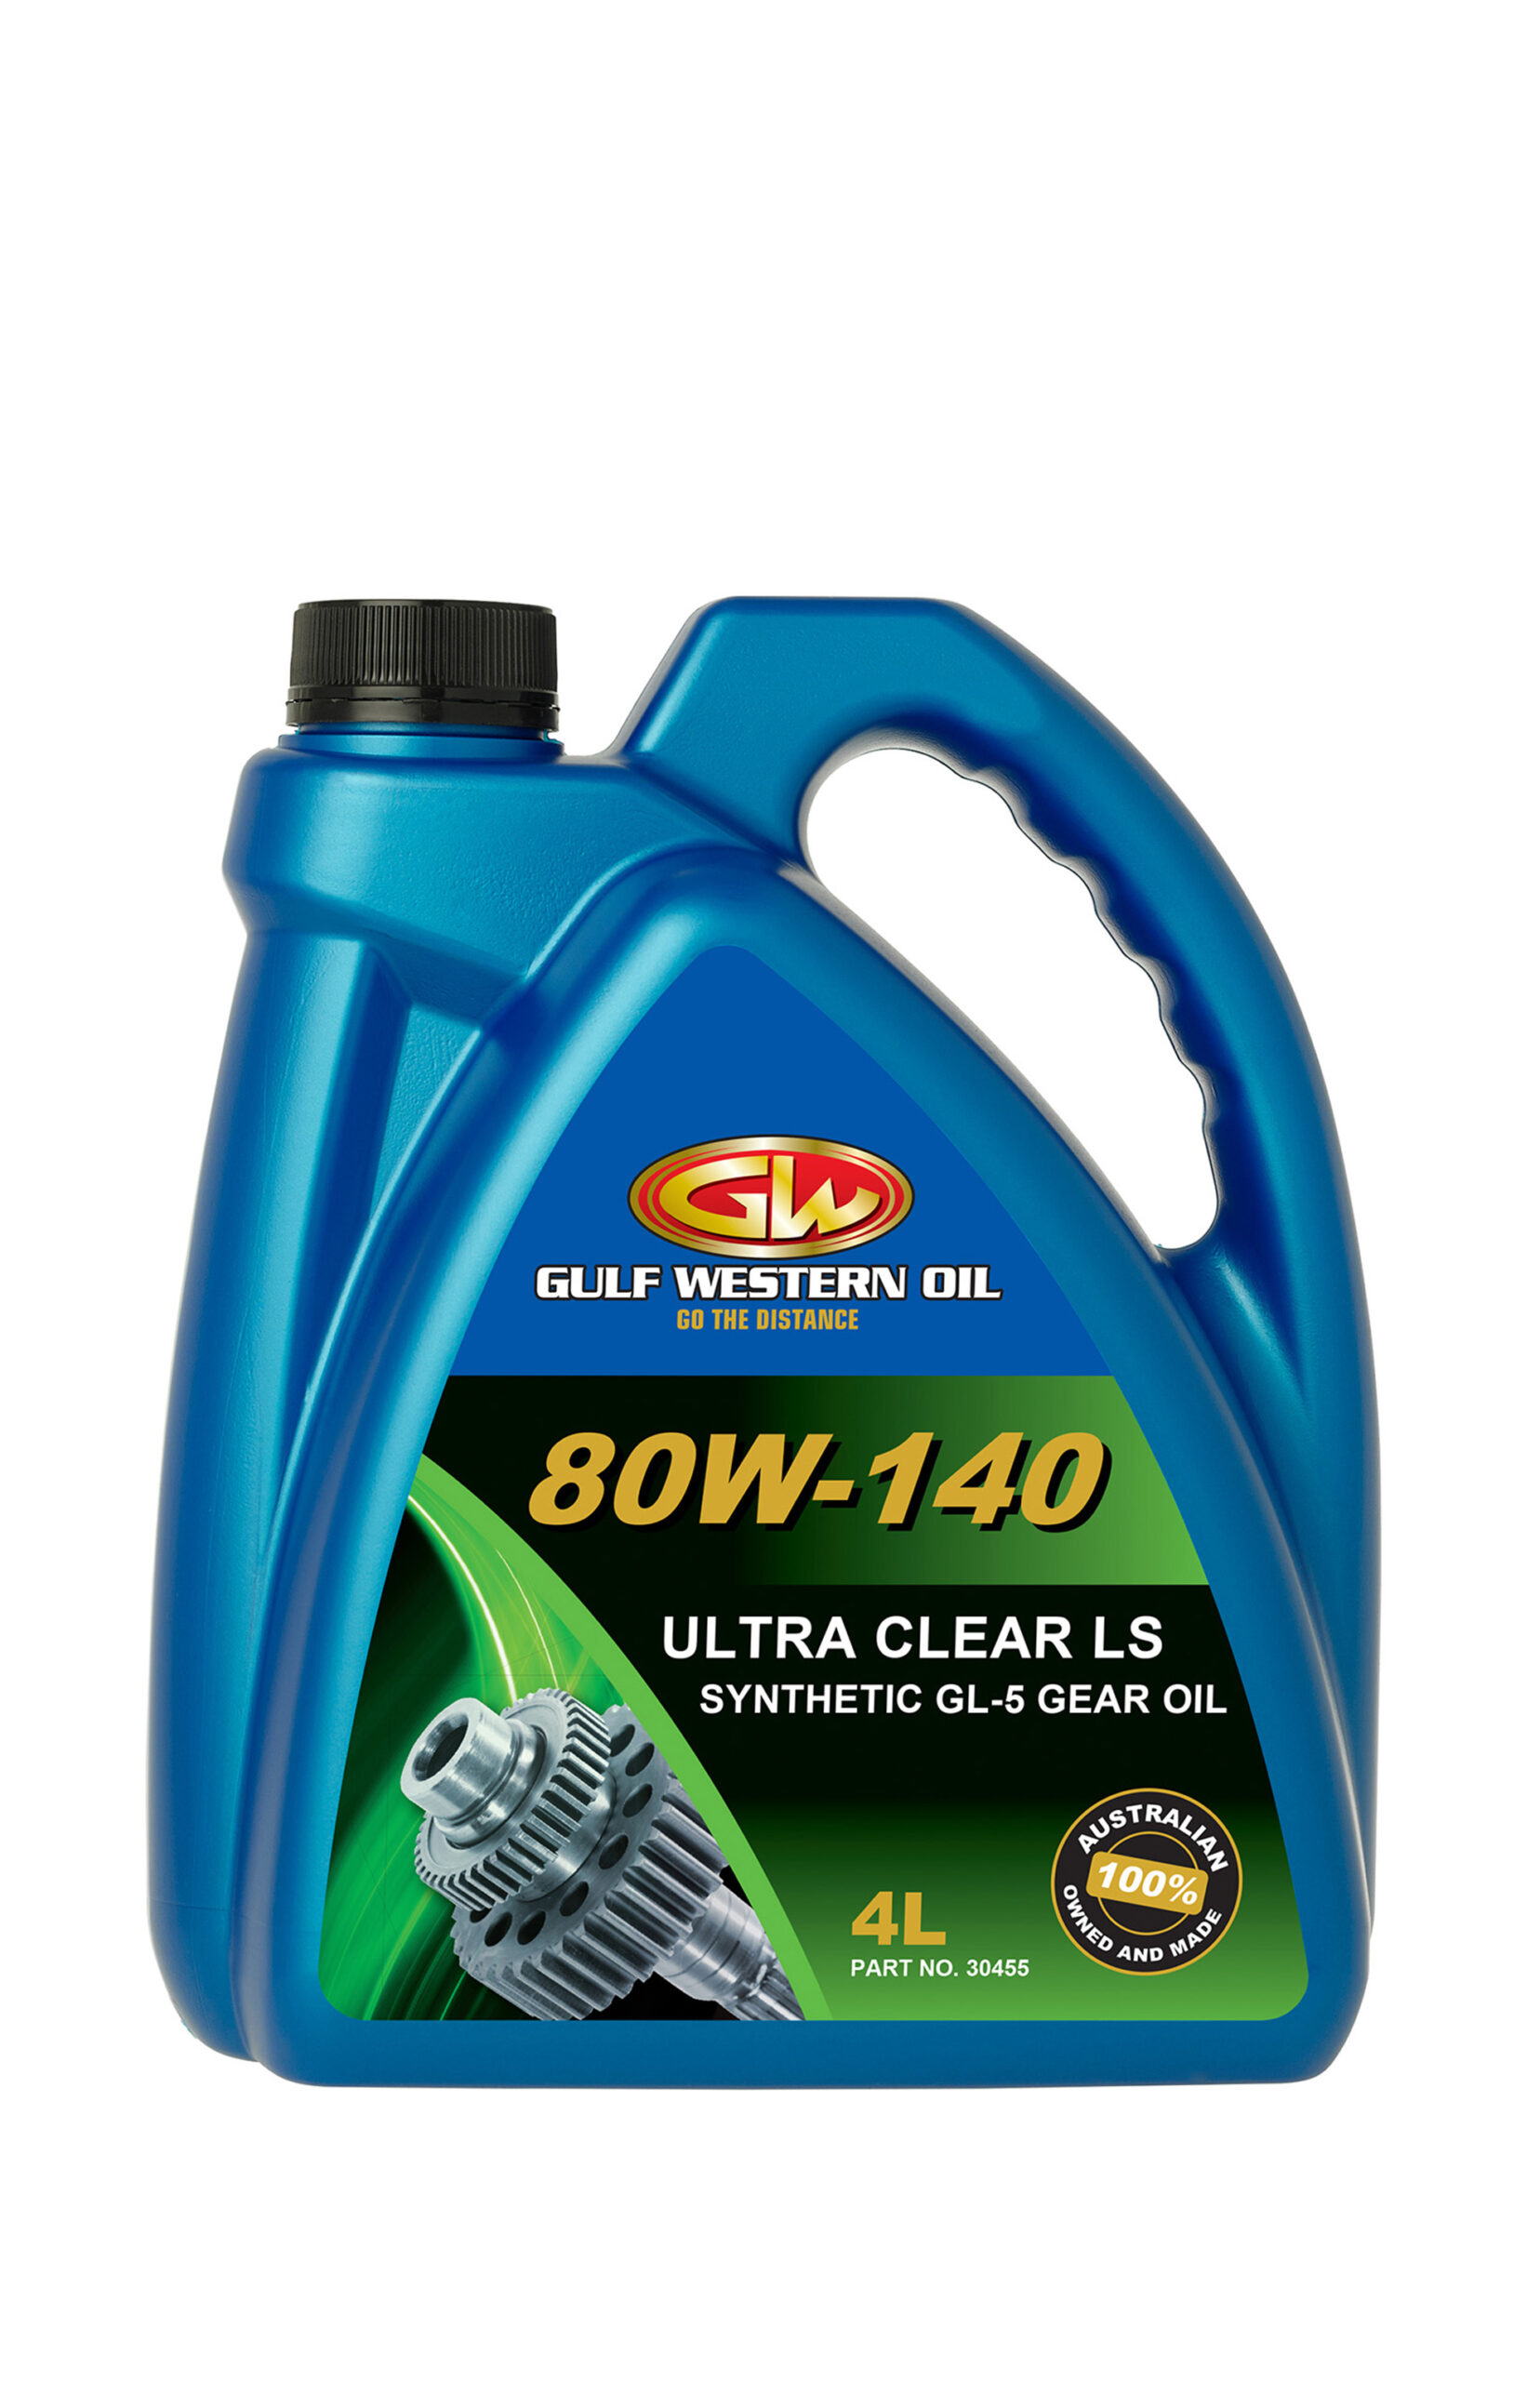 ULTRA CLEAR LS 80W-140